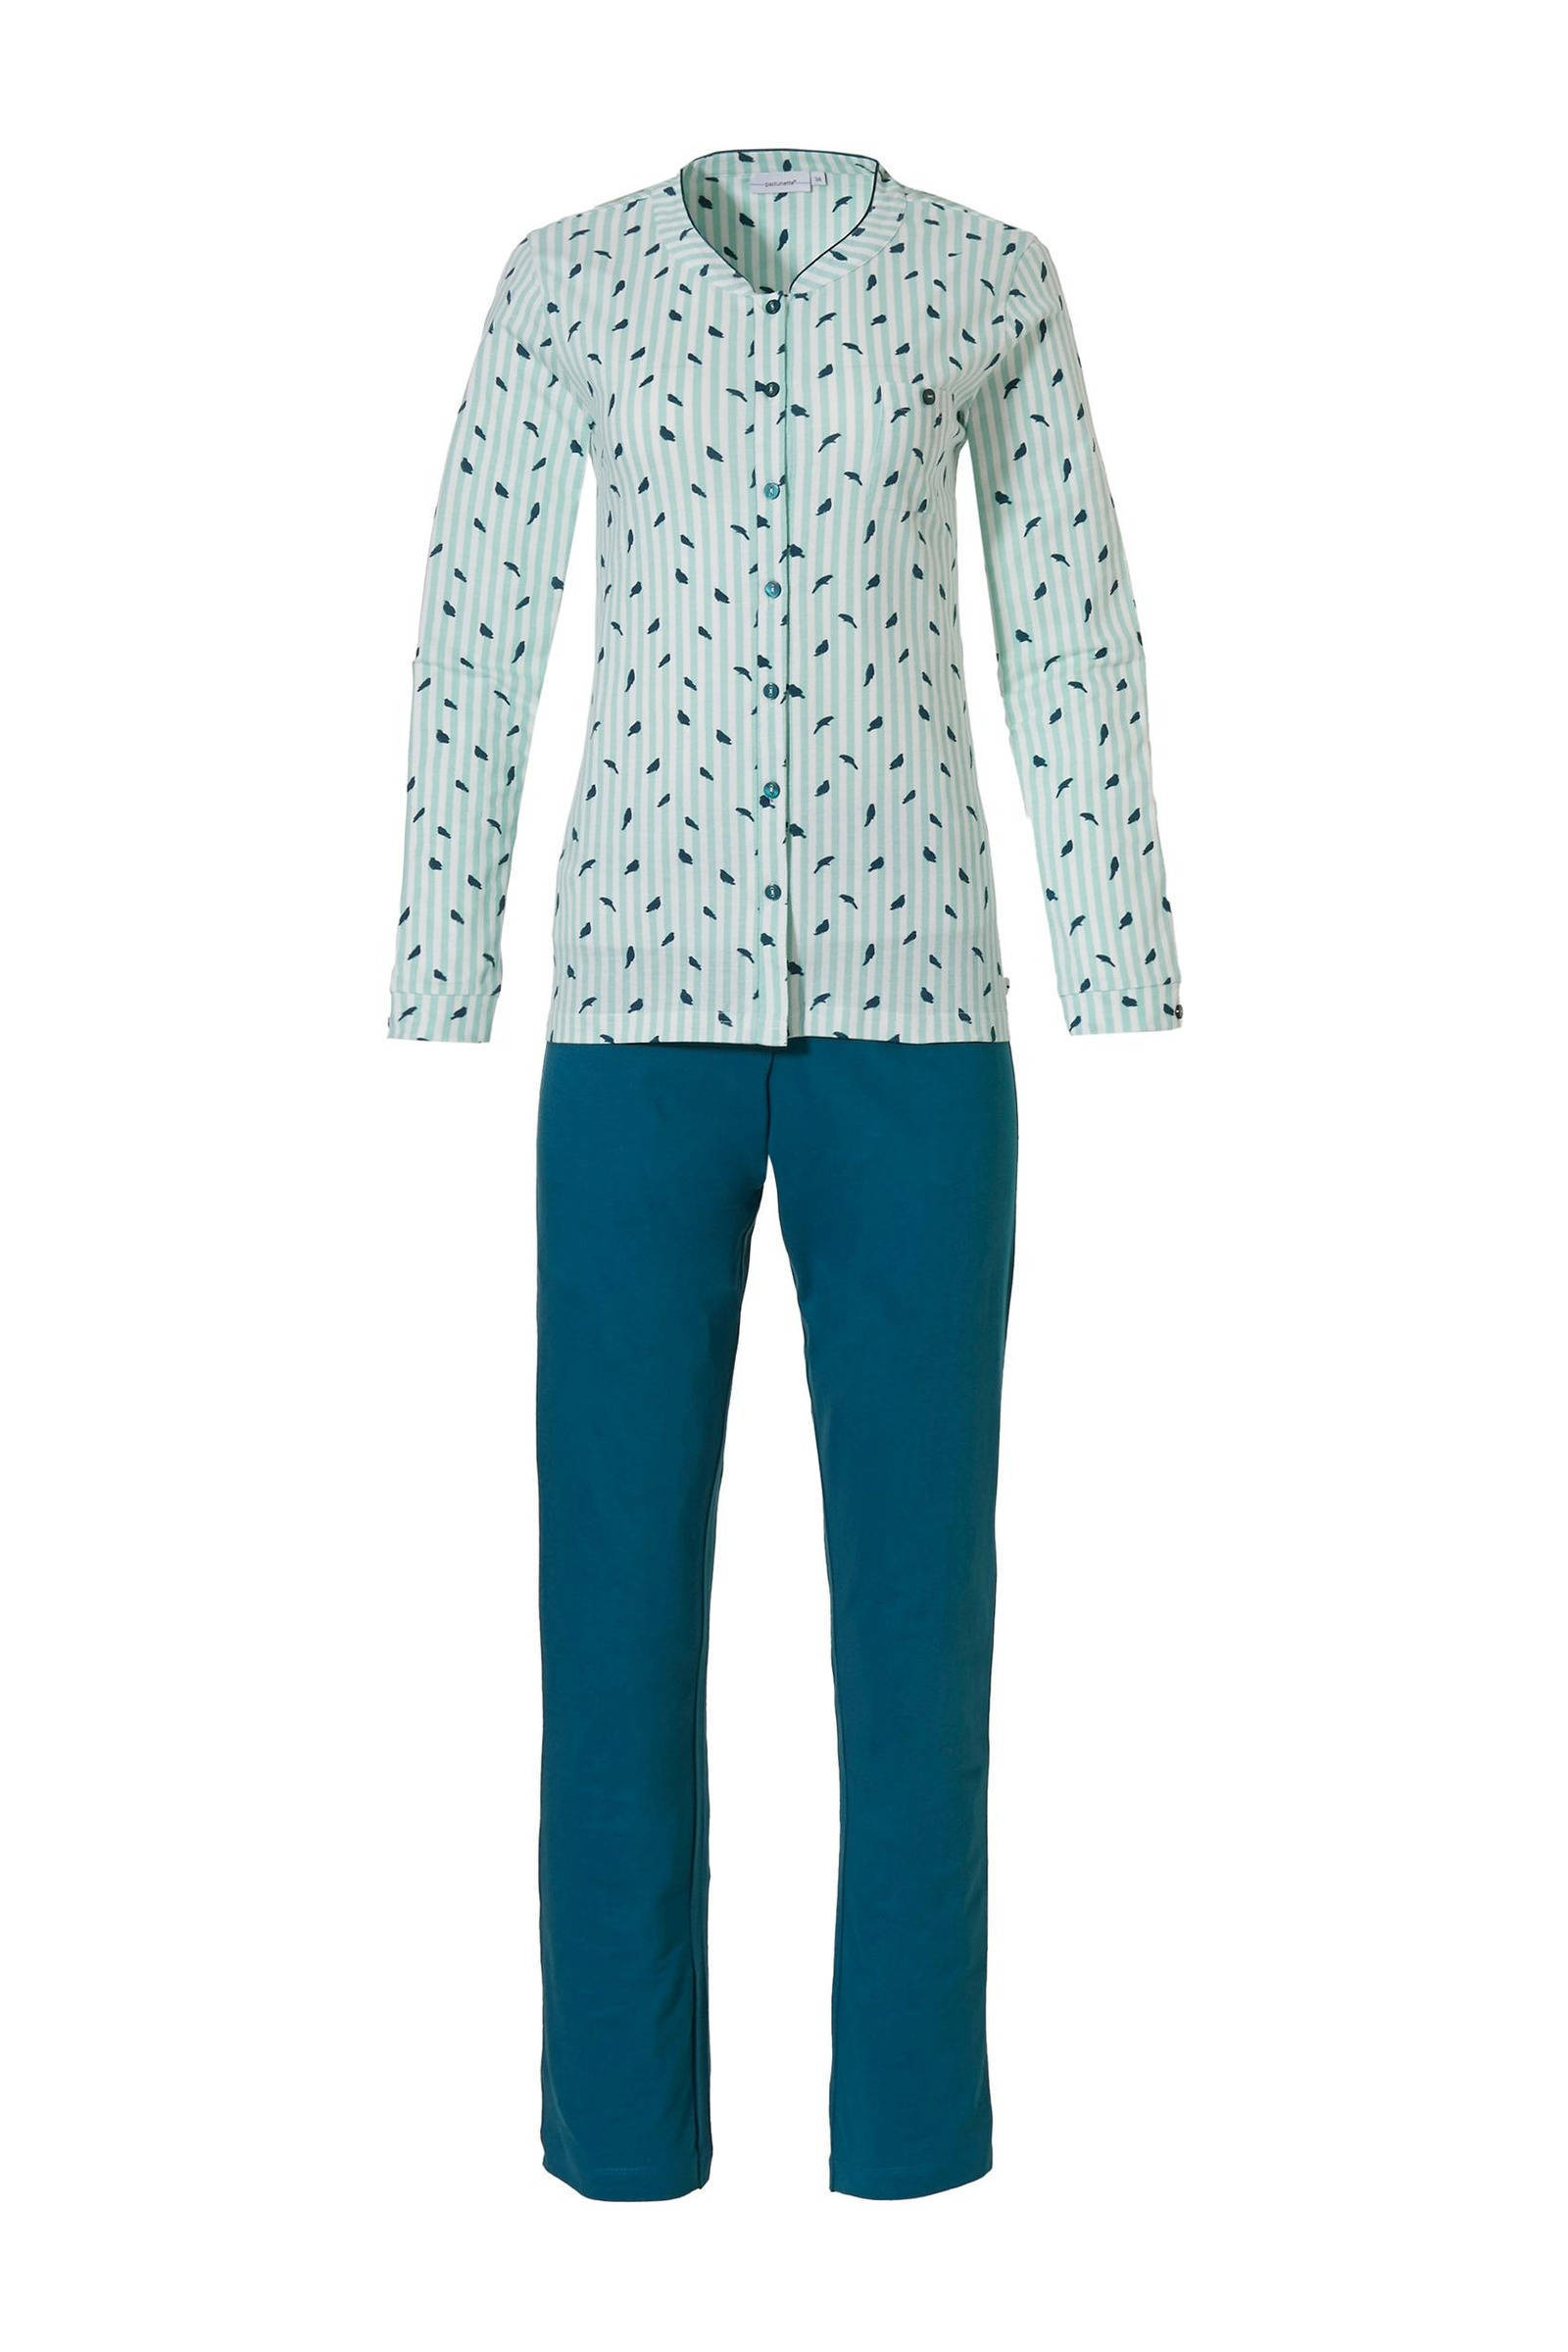 Pastunette Dames pyjama doorknoop 20212 145 6 Turquoise 50 online kopen